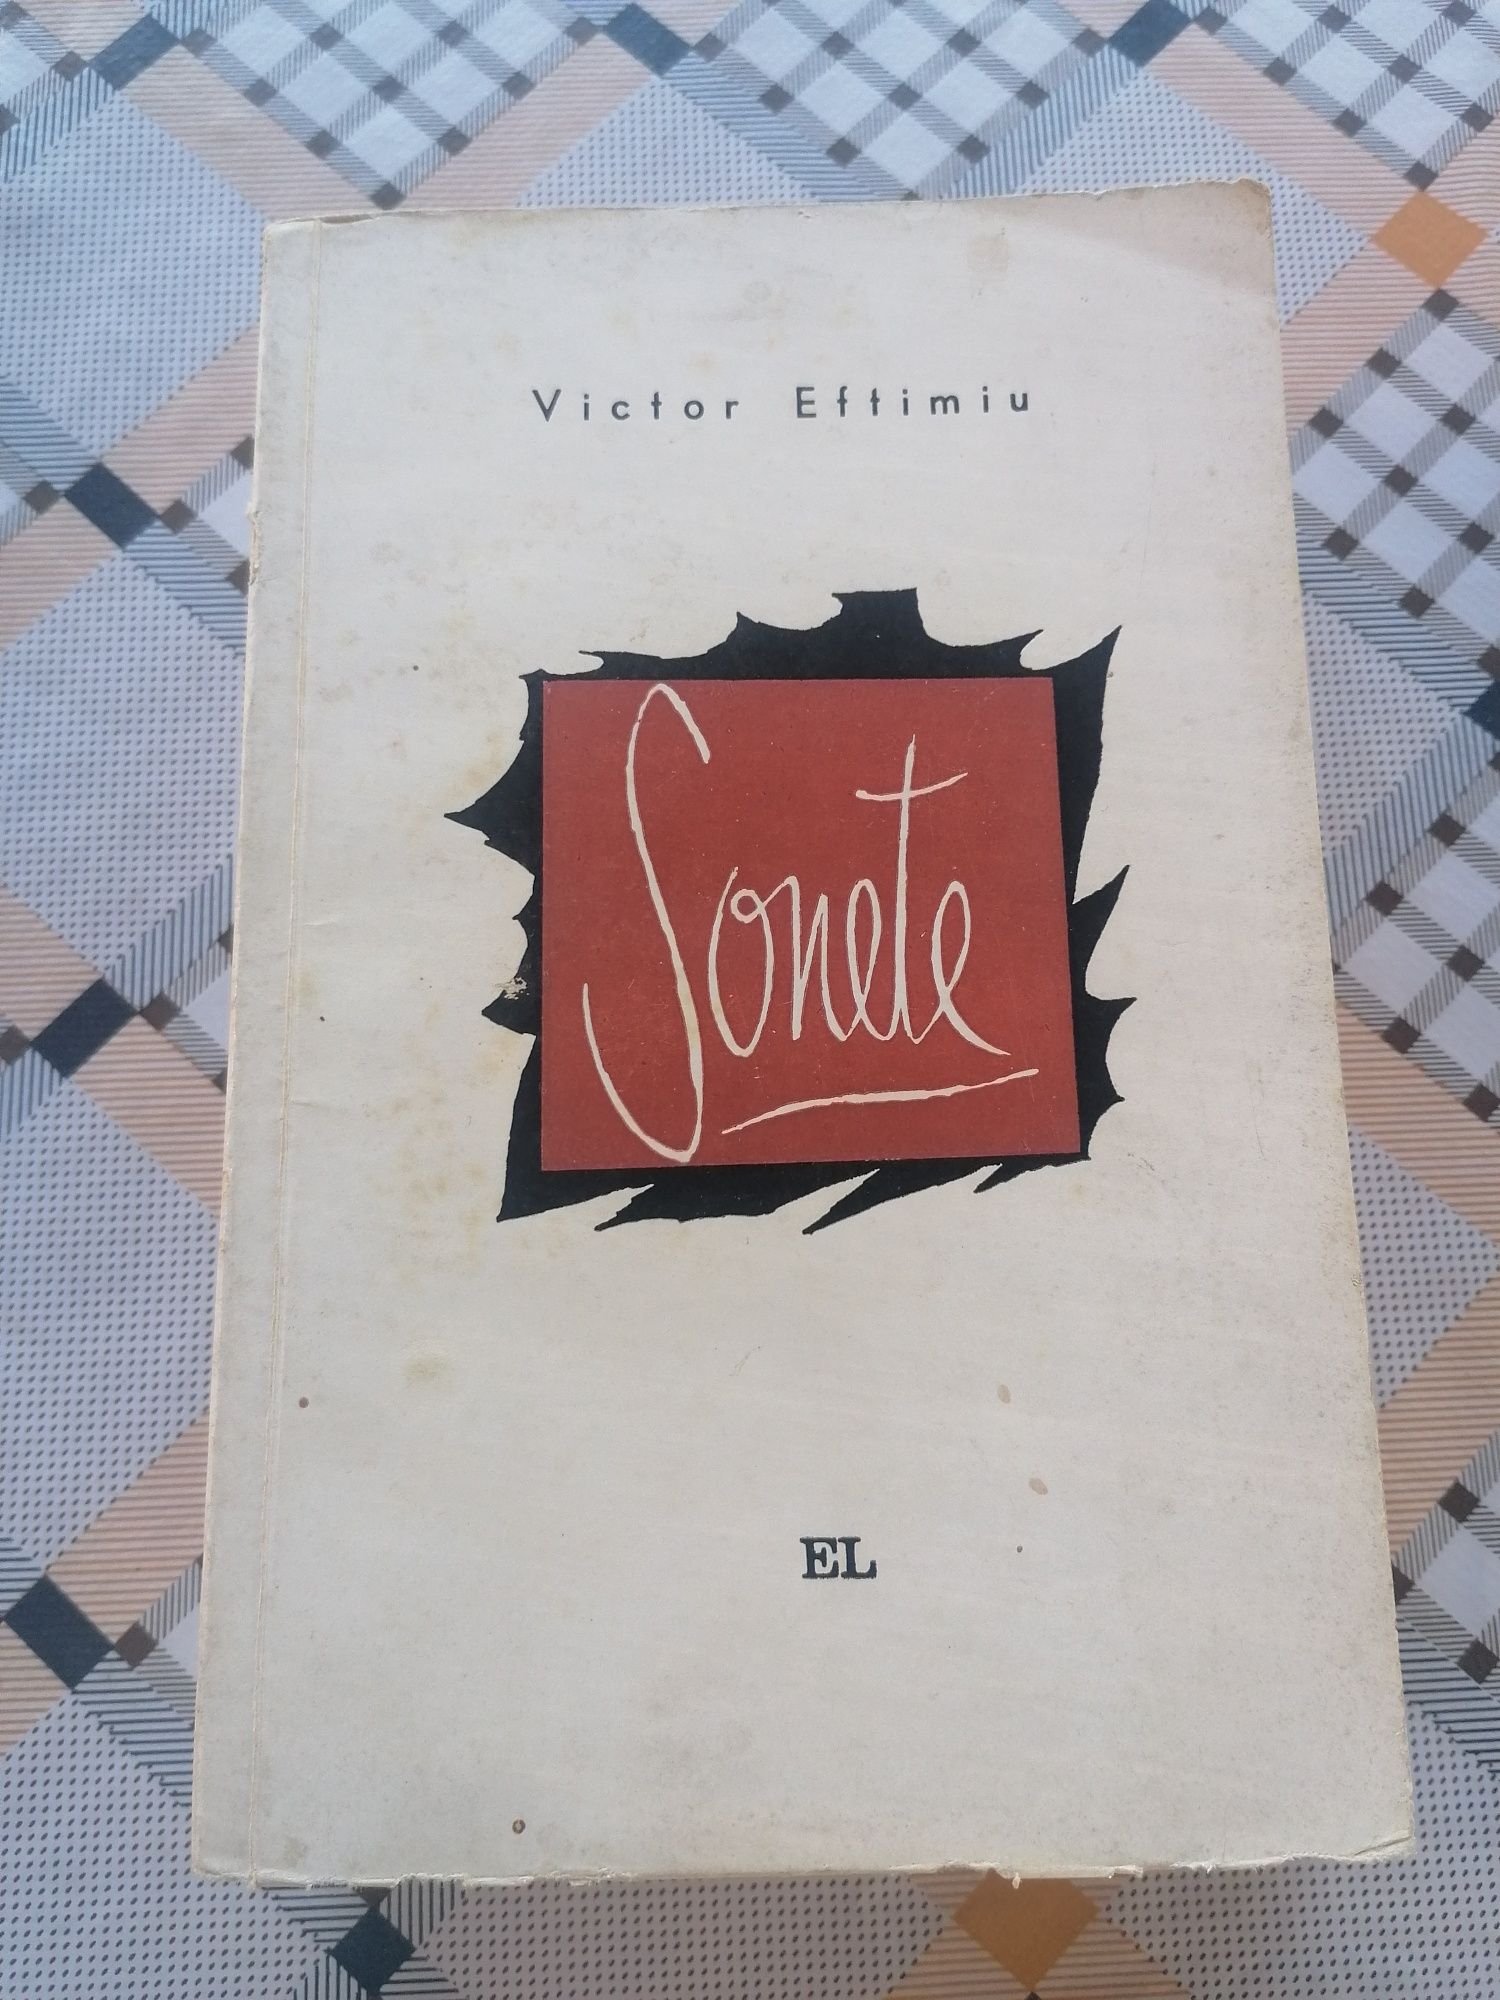 Vând carte Sonete de Victor Eftimiu cu autograf